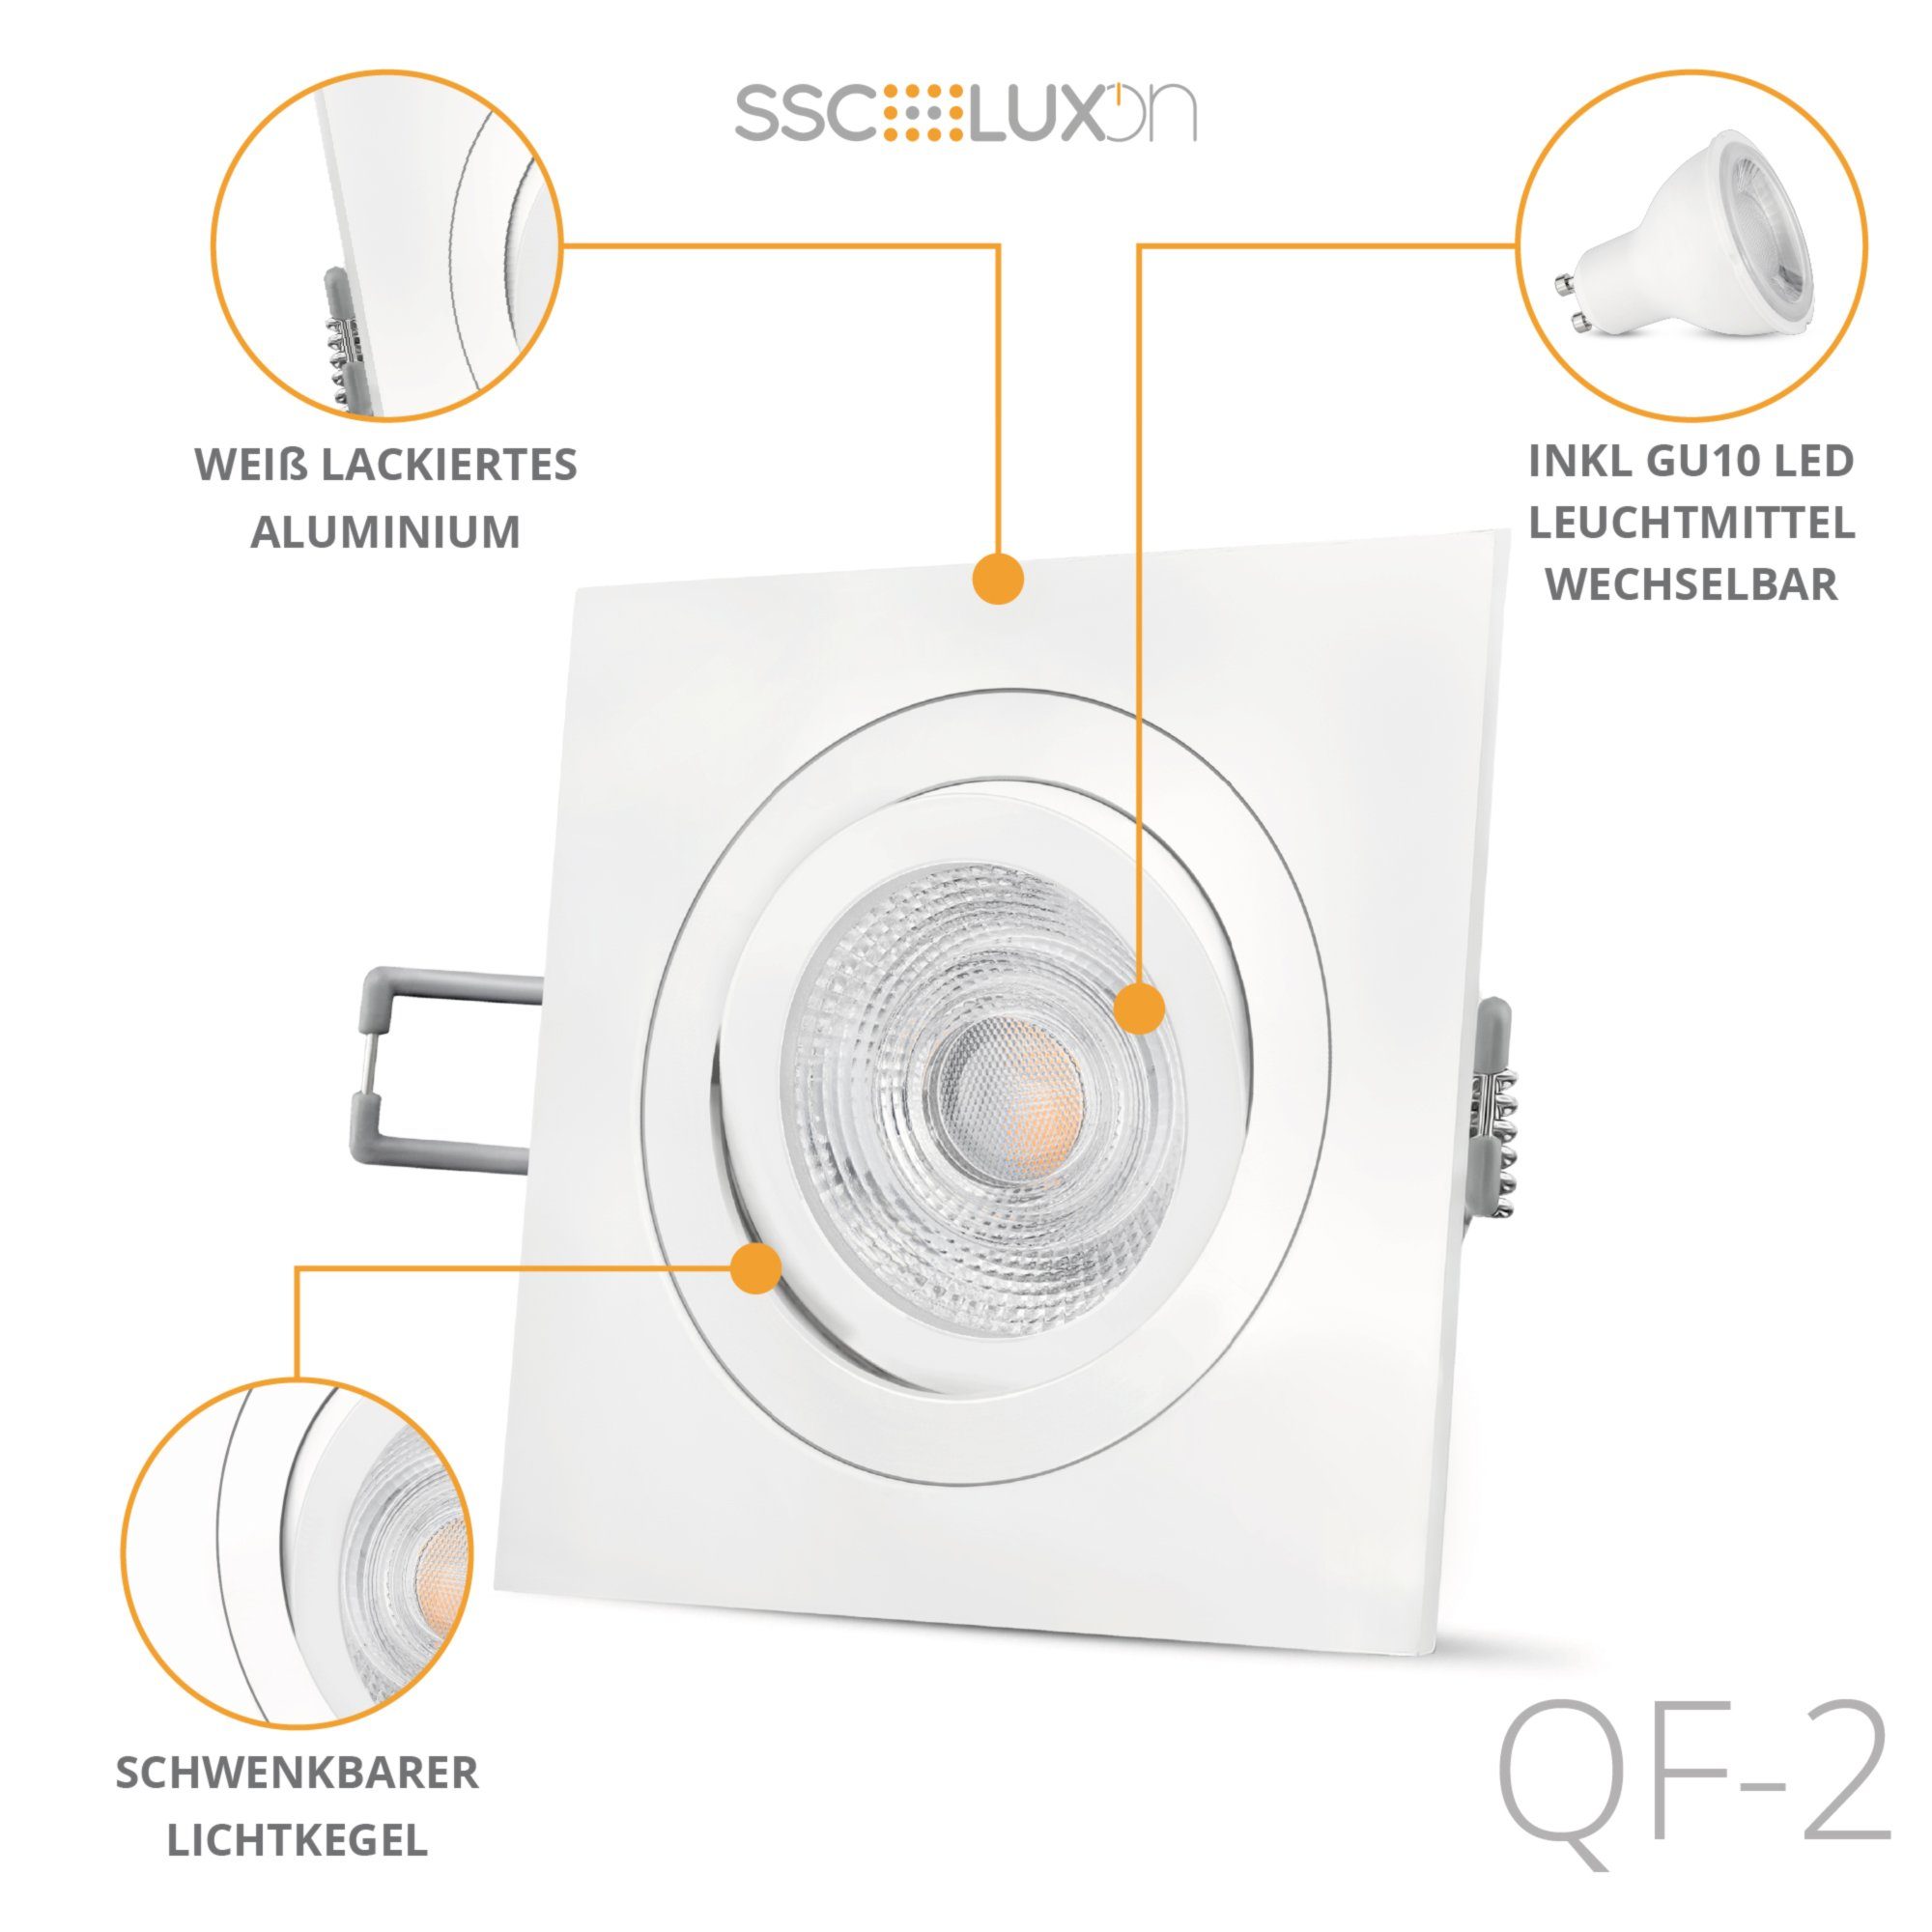 SSC-LUXon LED Einbaustrahler QF-2 quadratischer & Warmweiß weiss schwenkbar, matt LED Einbaustrahler